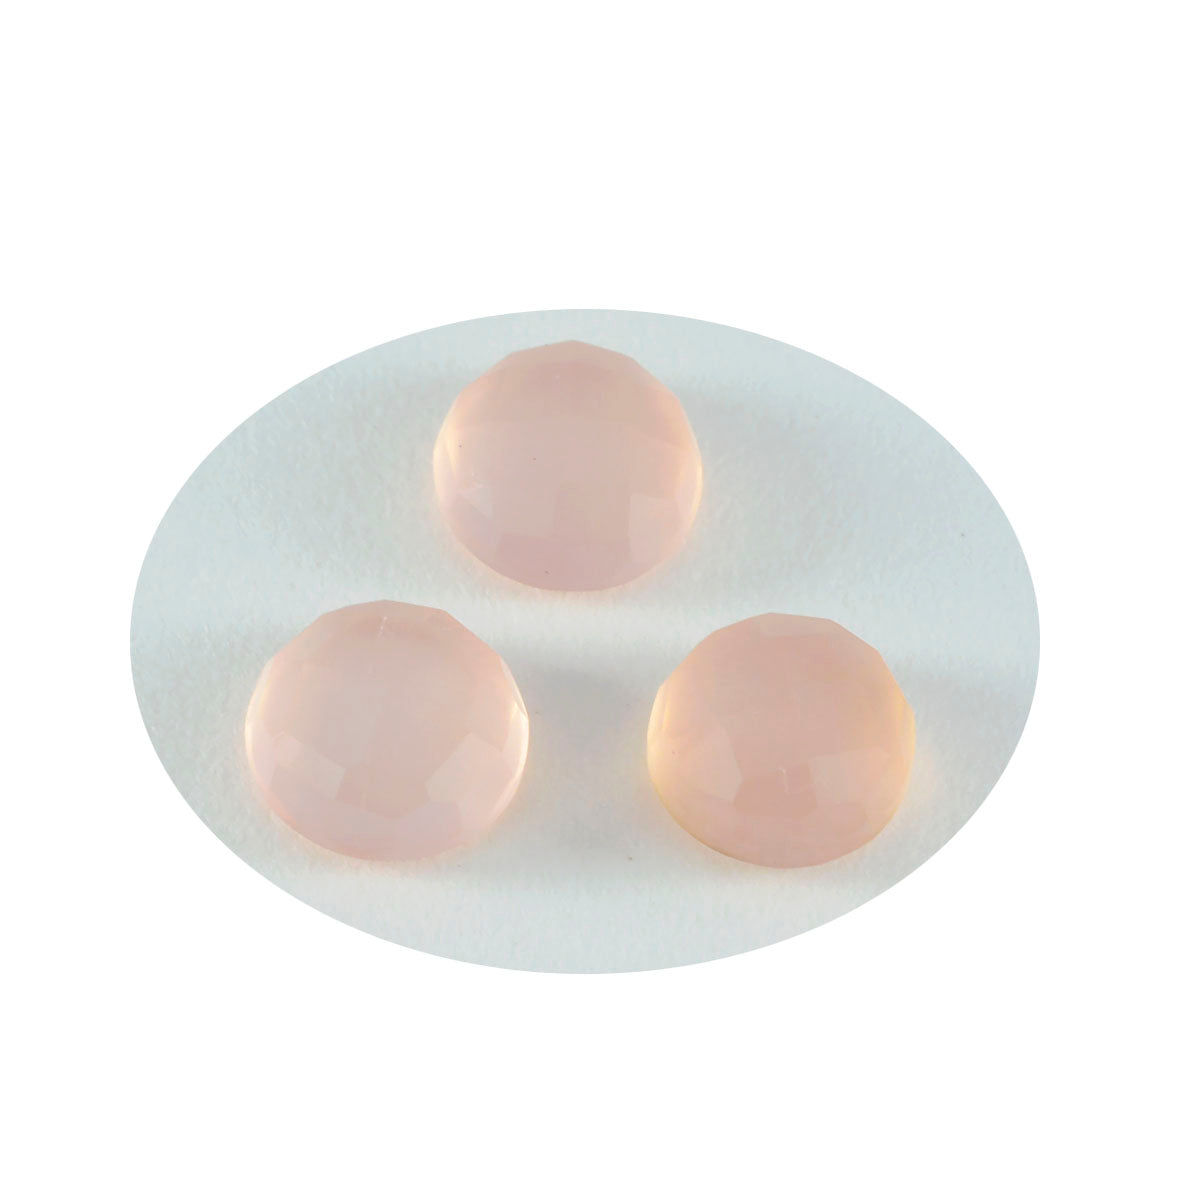 Riyogems 1pc quartz rose à facettes 15x15mm forme ronde excellente qualité pierres précieuses en vrac